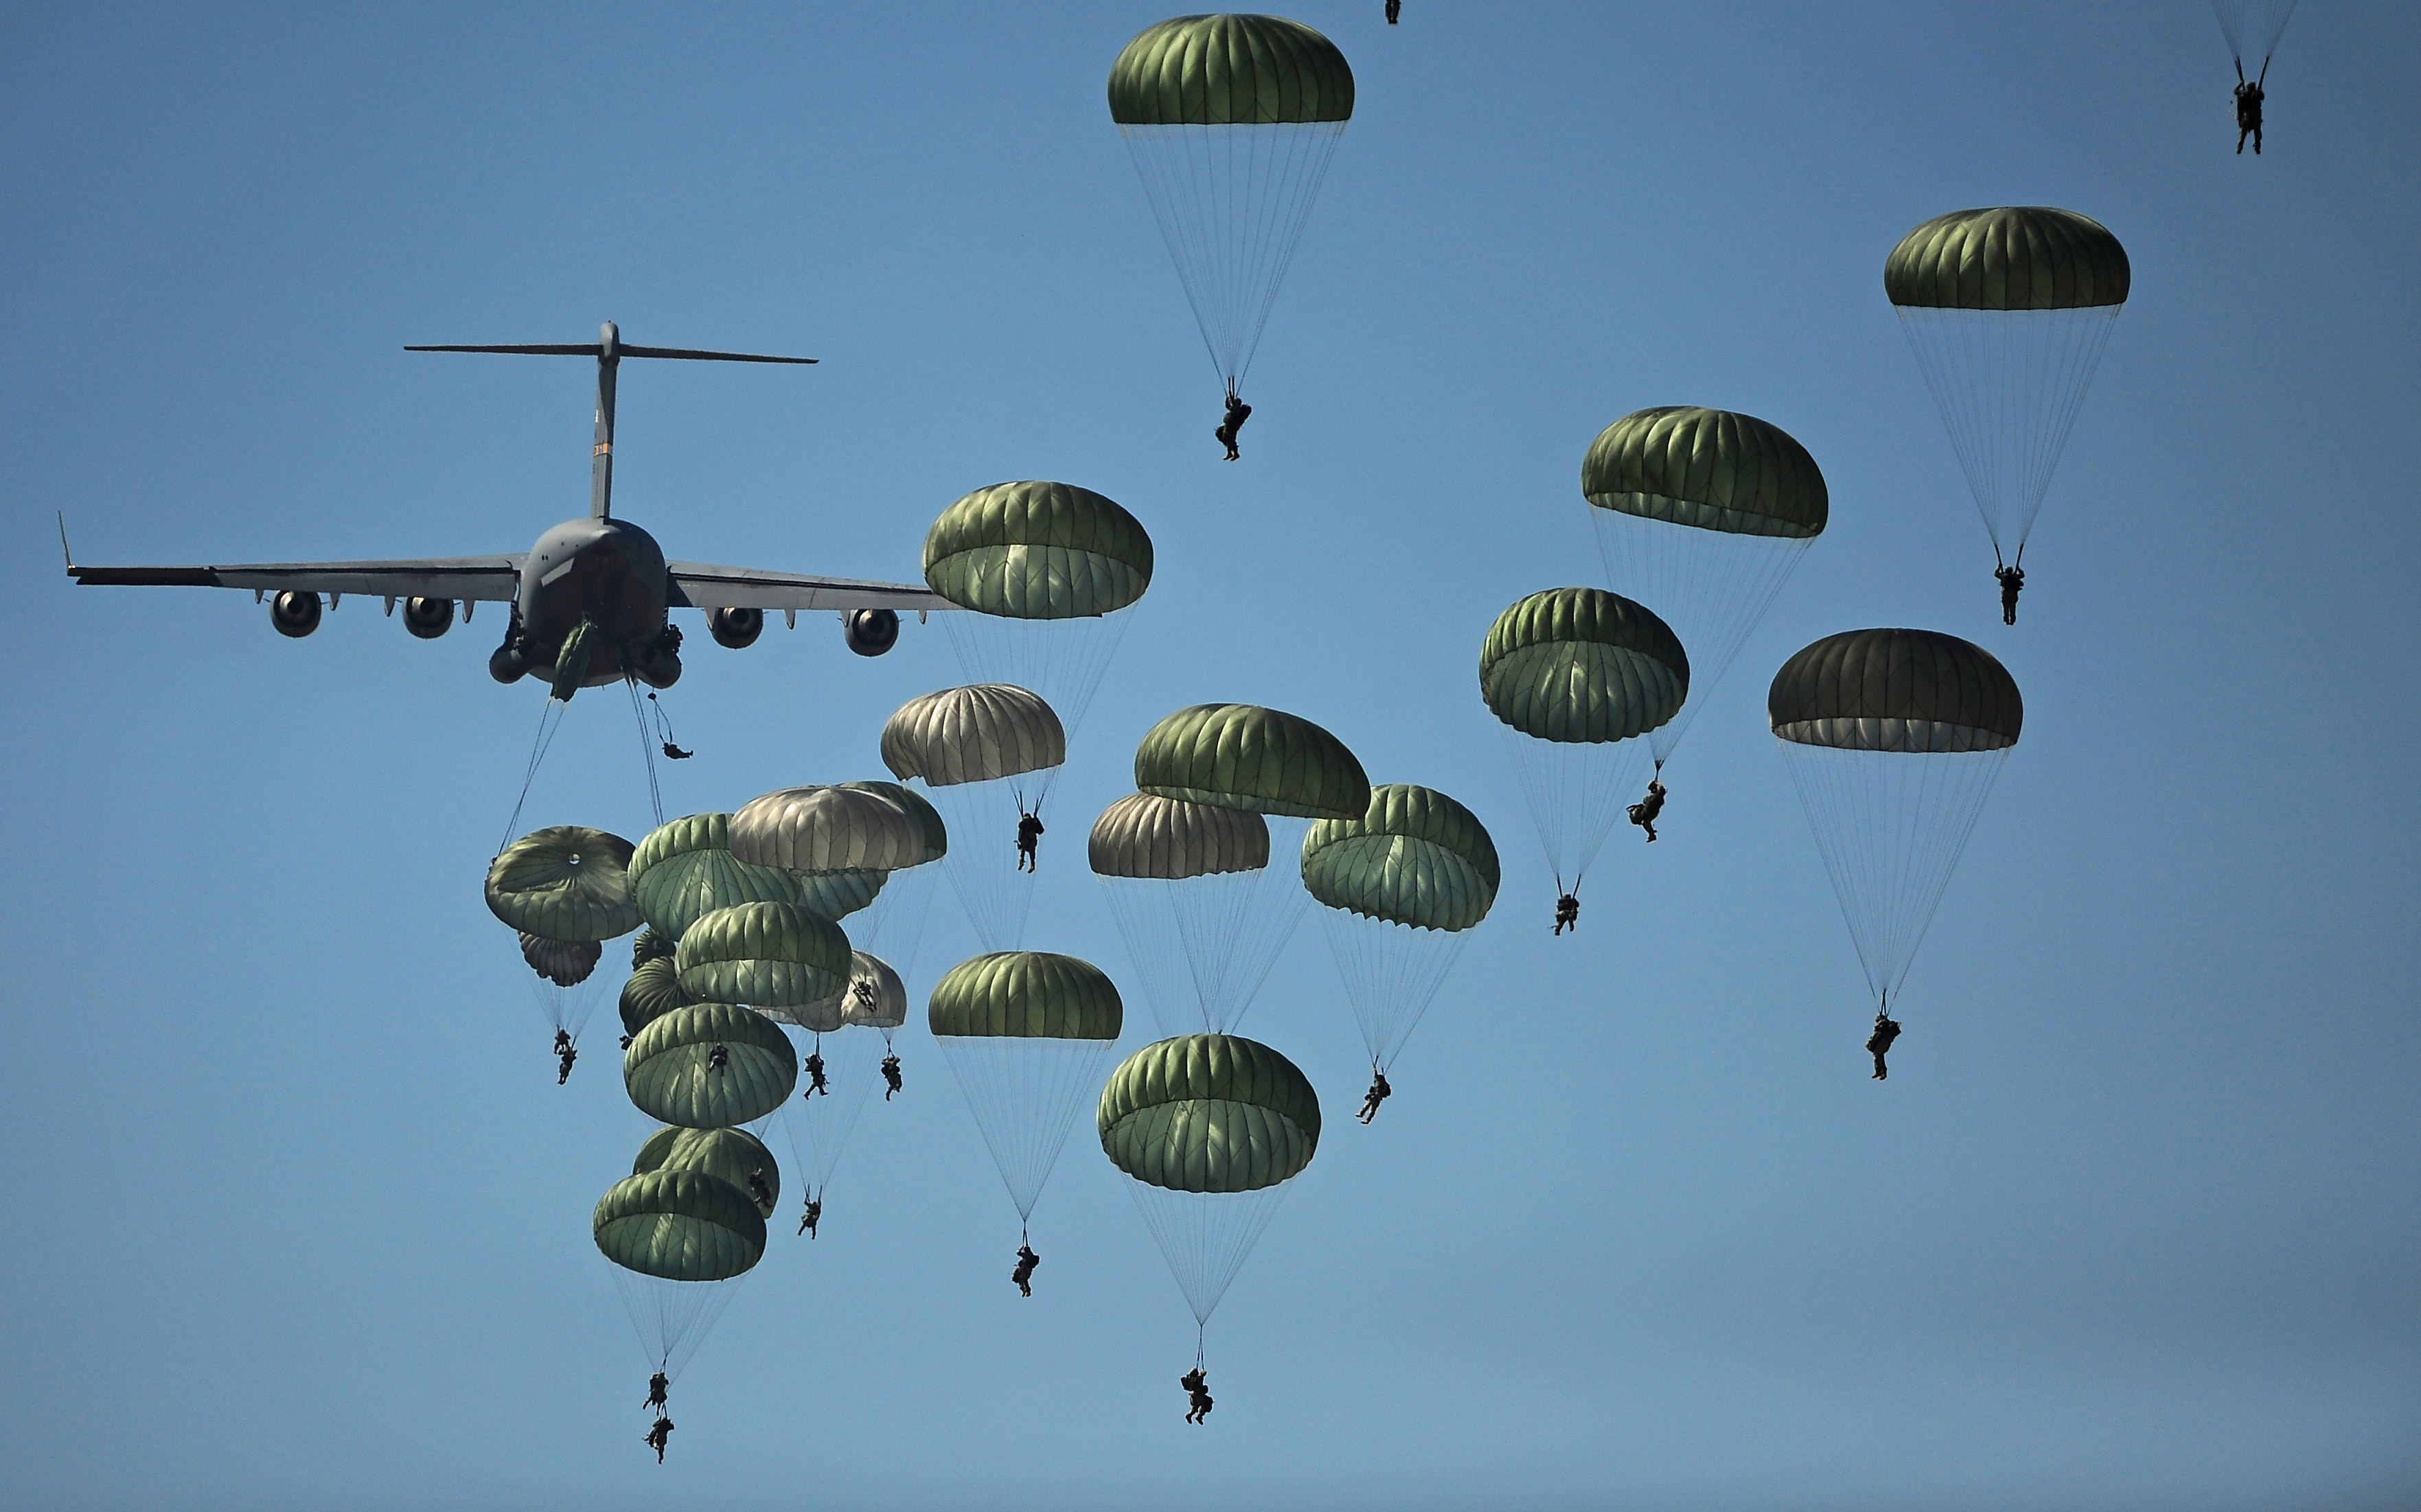 FileDefense.gov News Photo 110910GO452406 U.S. Army paratroopers